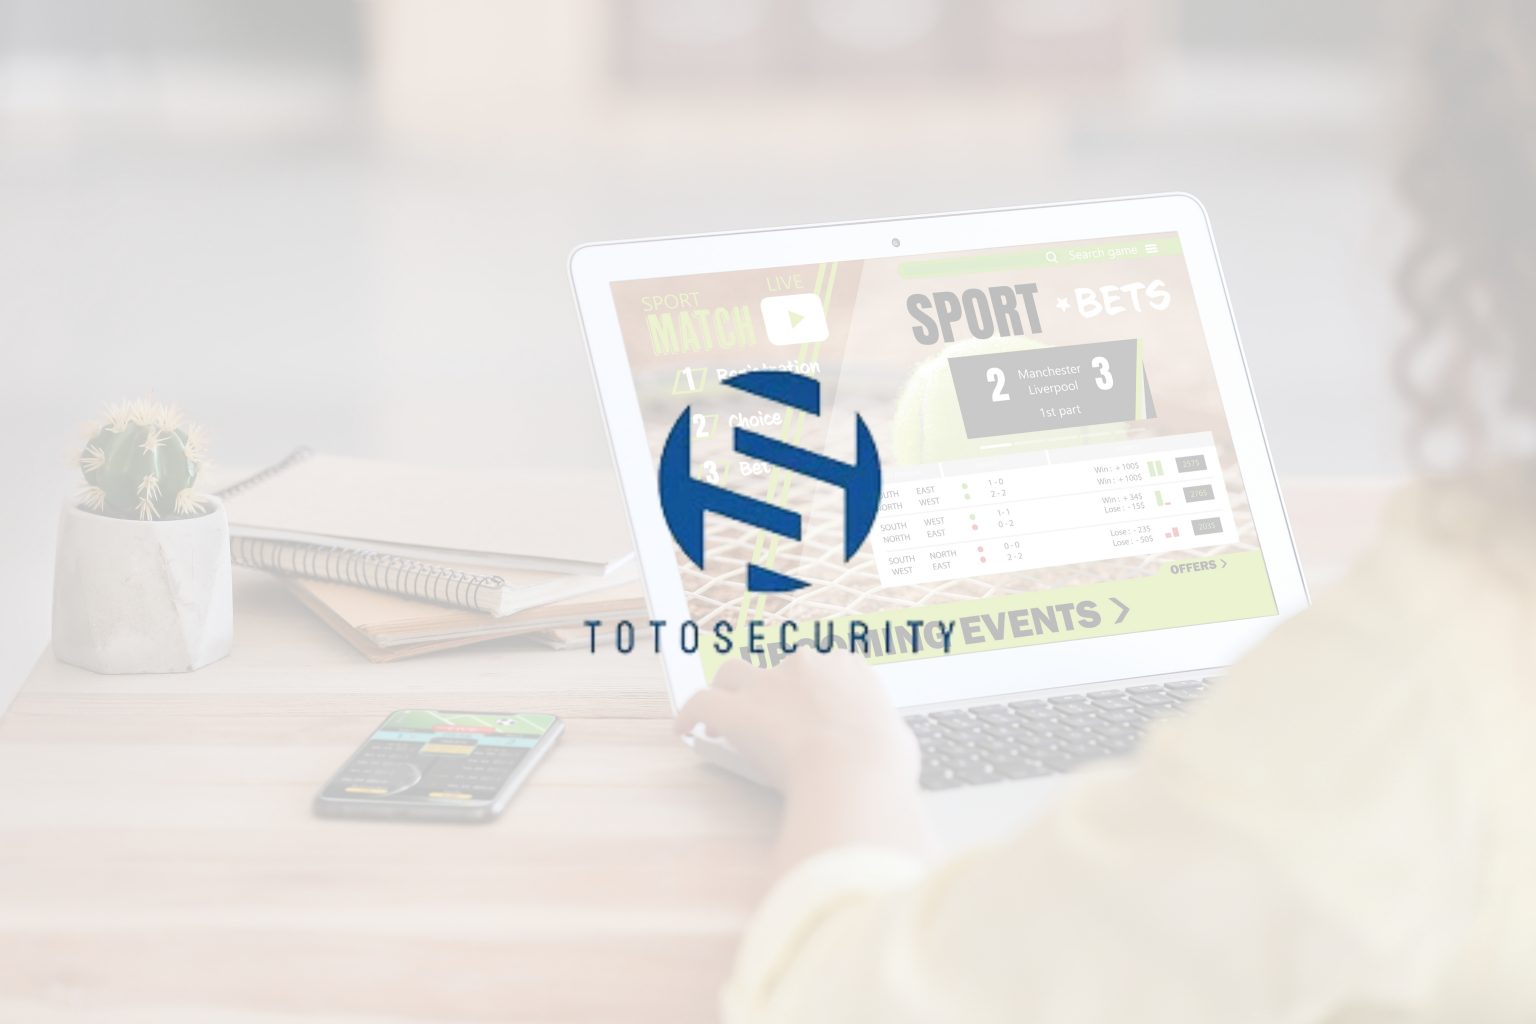 신뢰하지만 검증: Toto 플랫폼을 활용한 스포츠 베팅의 안전성 확보